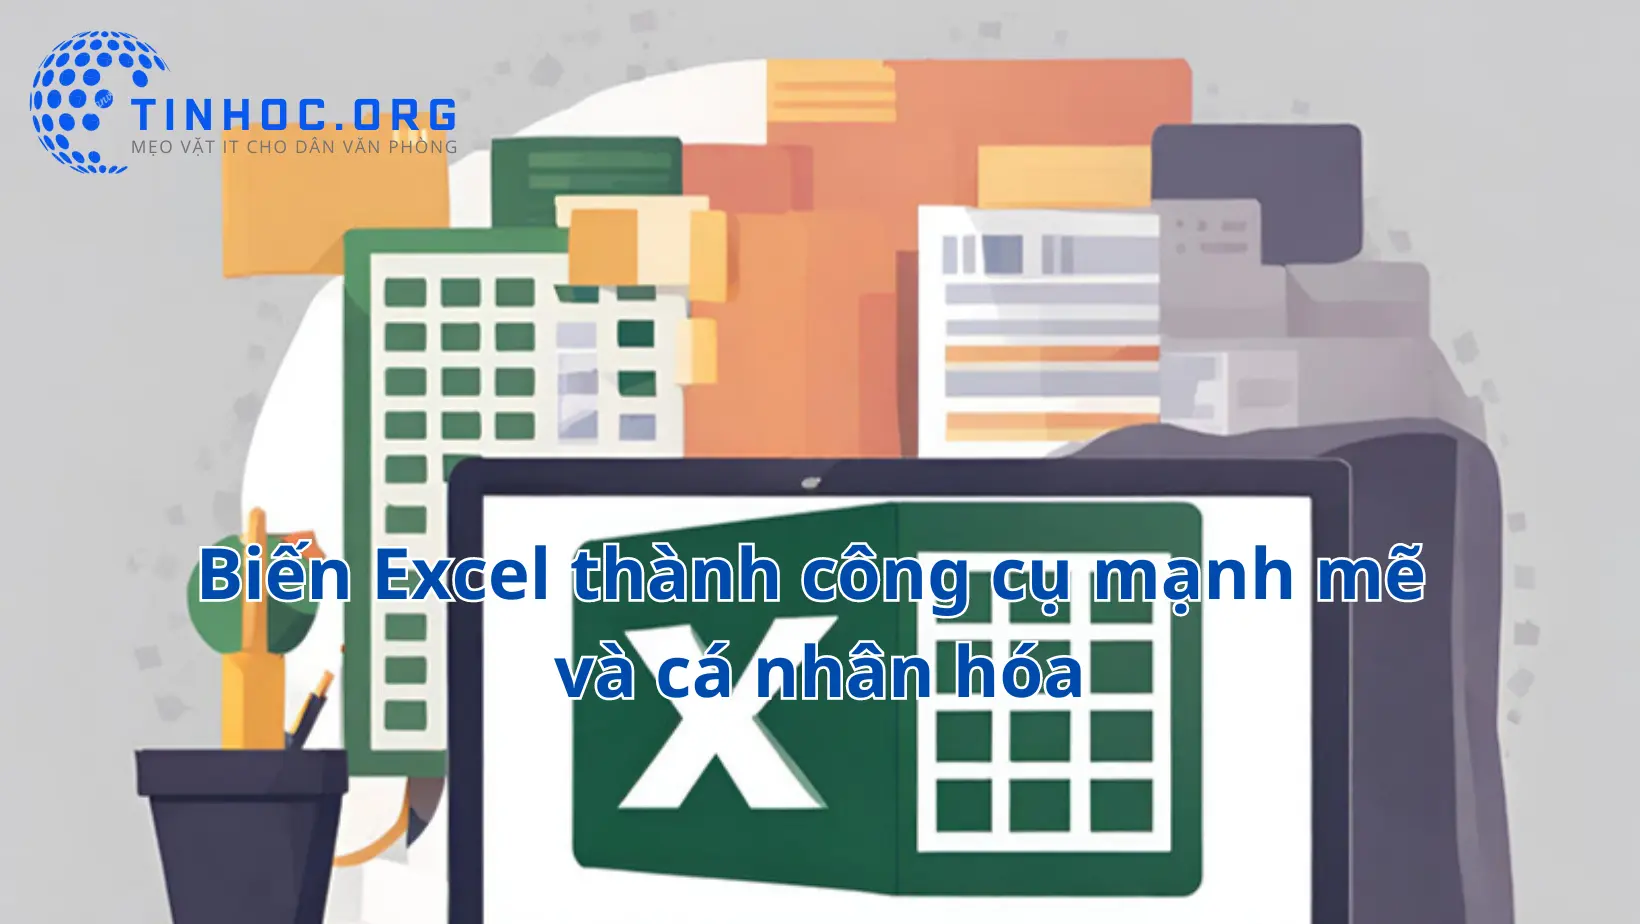 Microsoft Excel là một công cụ mạnh mẽ, nhưng việc nắm vững các thủ thuật nhỏ có thể giúp bạn làm việc hiệu quả và sáng tạo hơn.